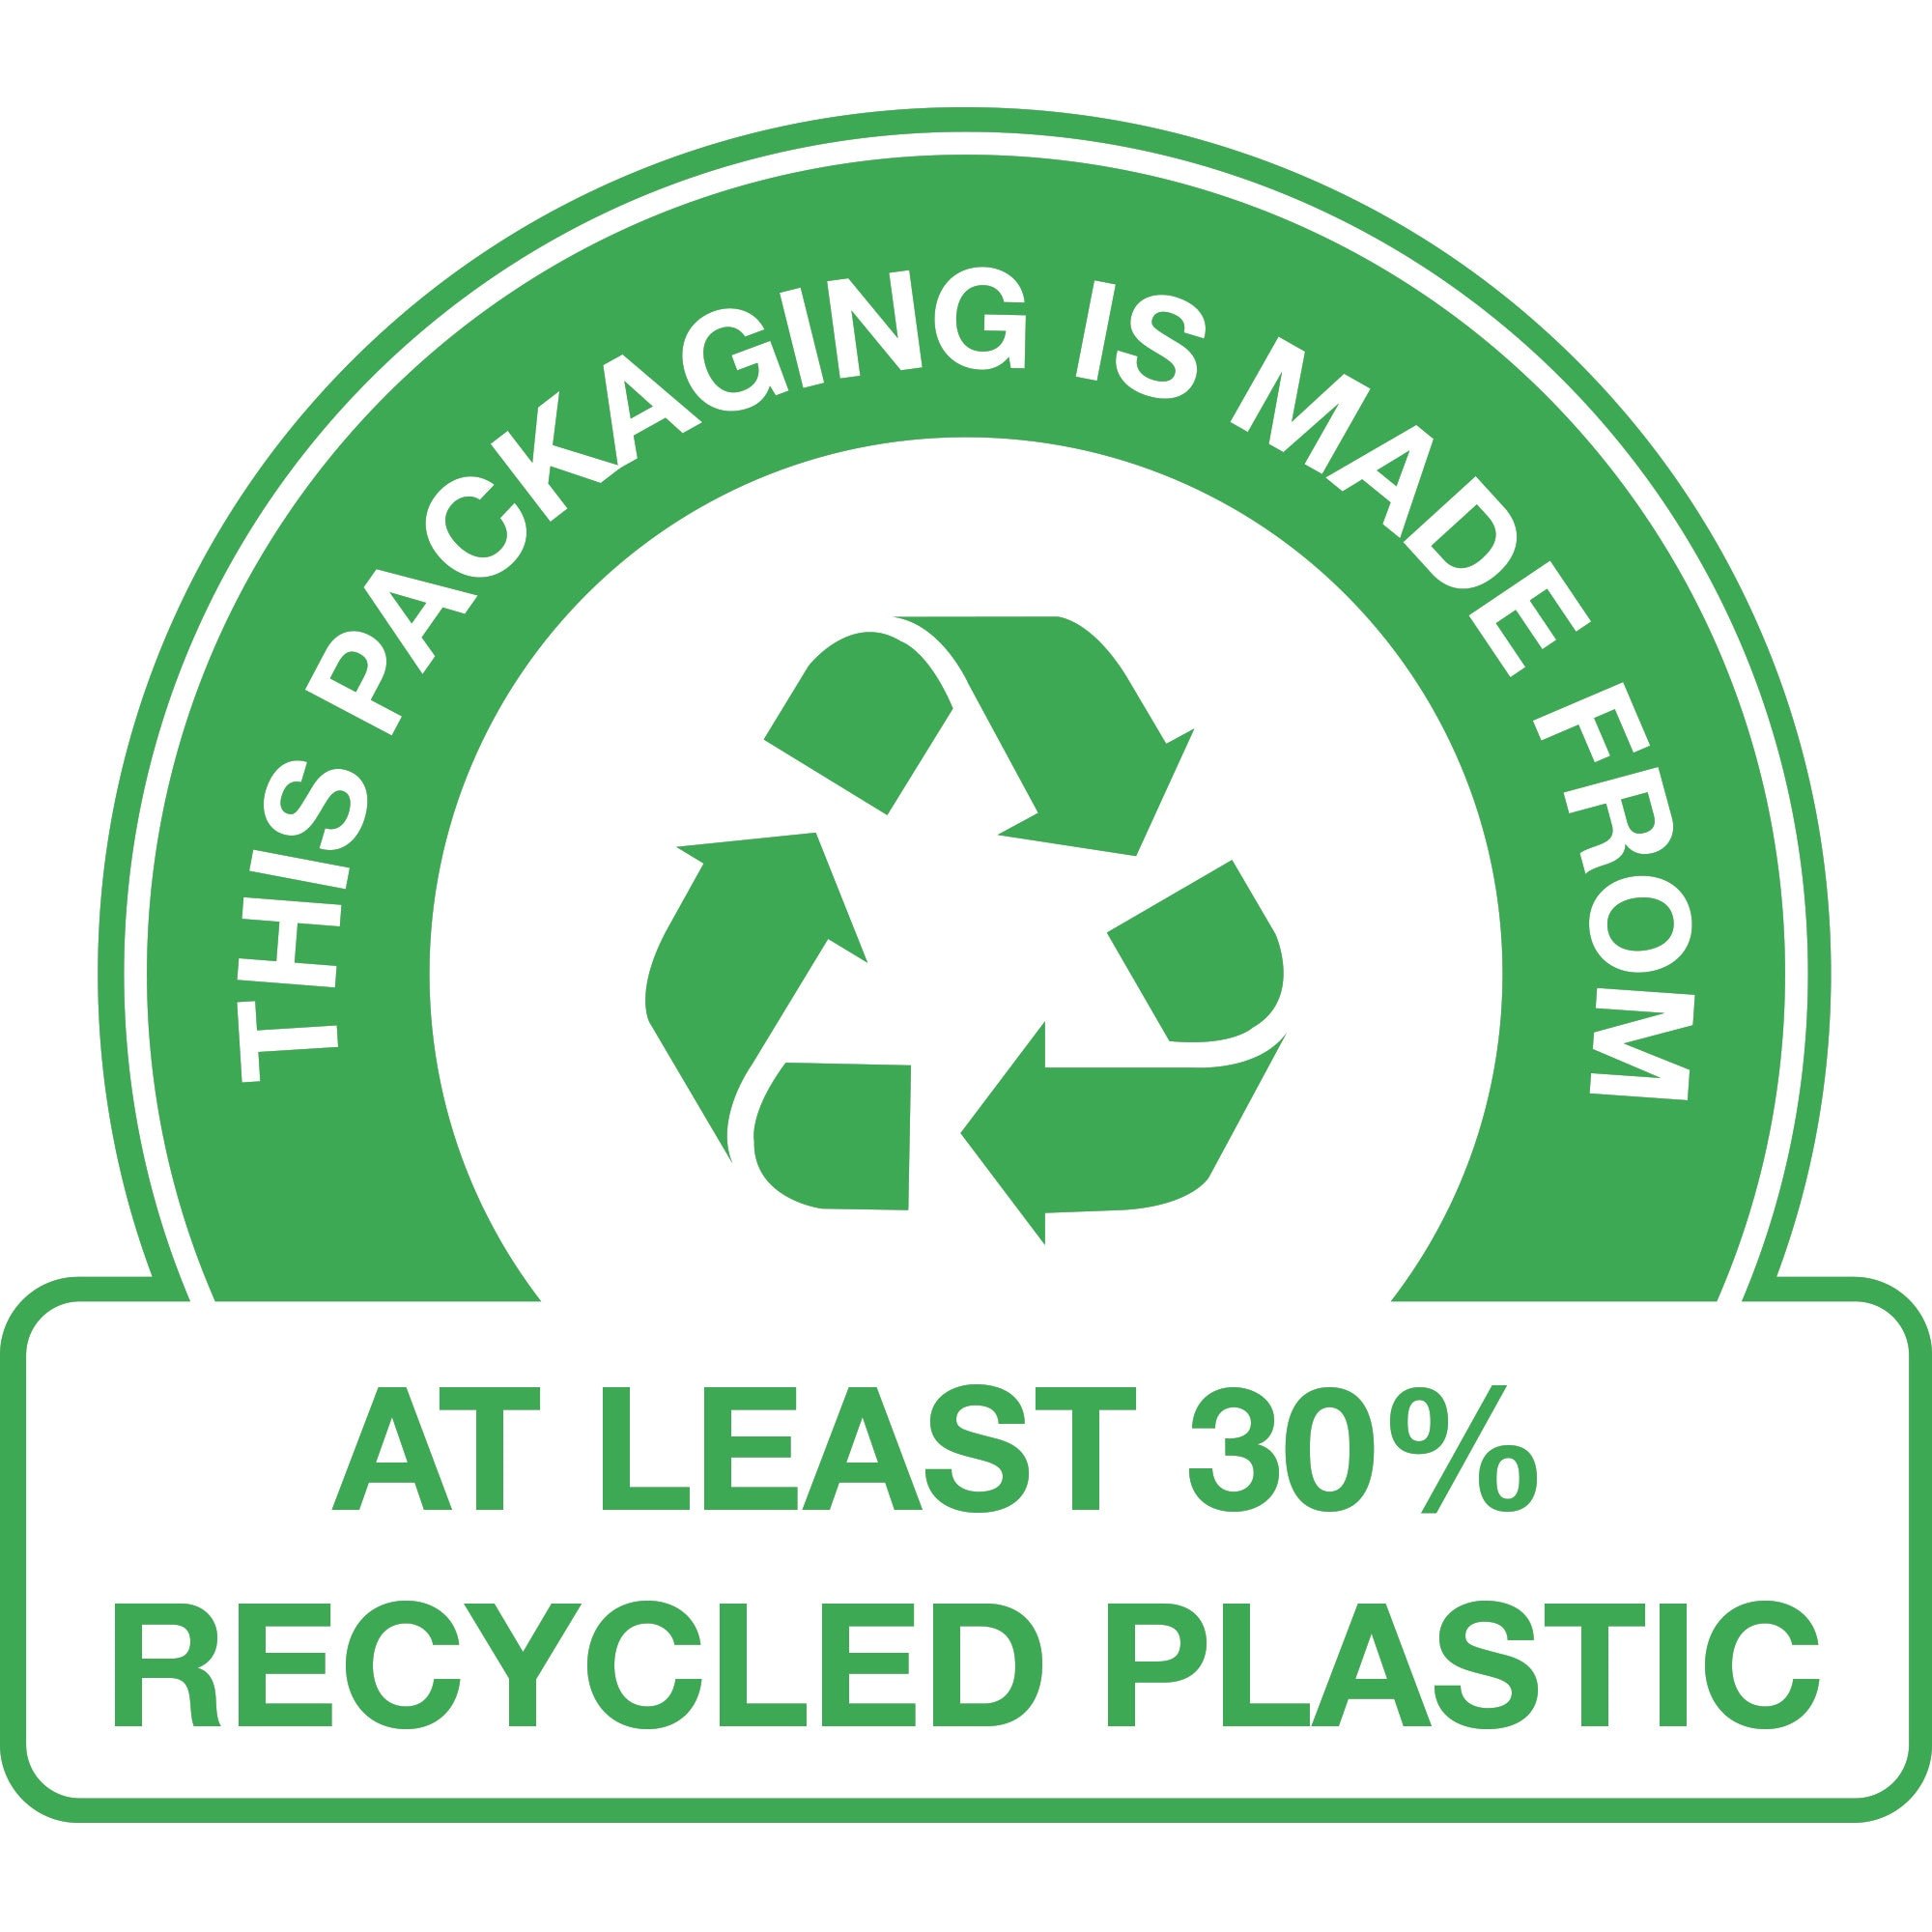 OPAKOWANIE WYPRODUKOWANE Z – plastiku pochodzącego przynajmniej w 30% z recyklingu